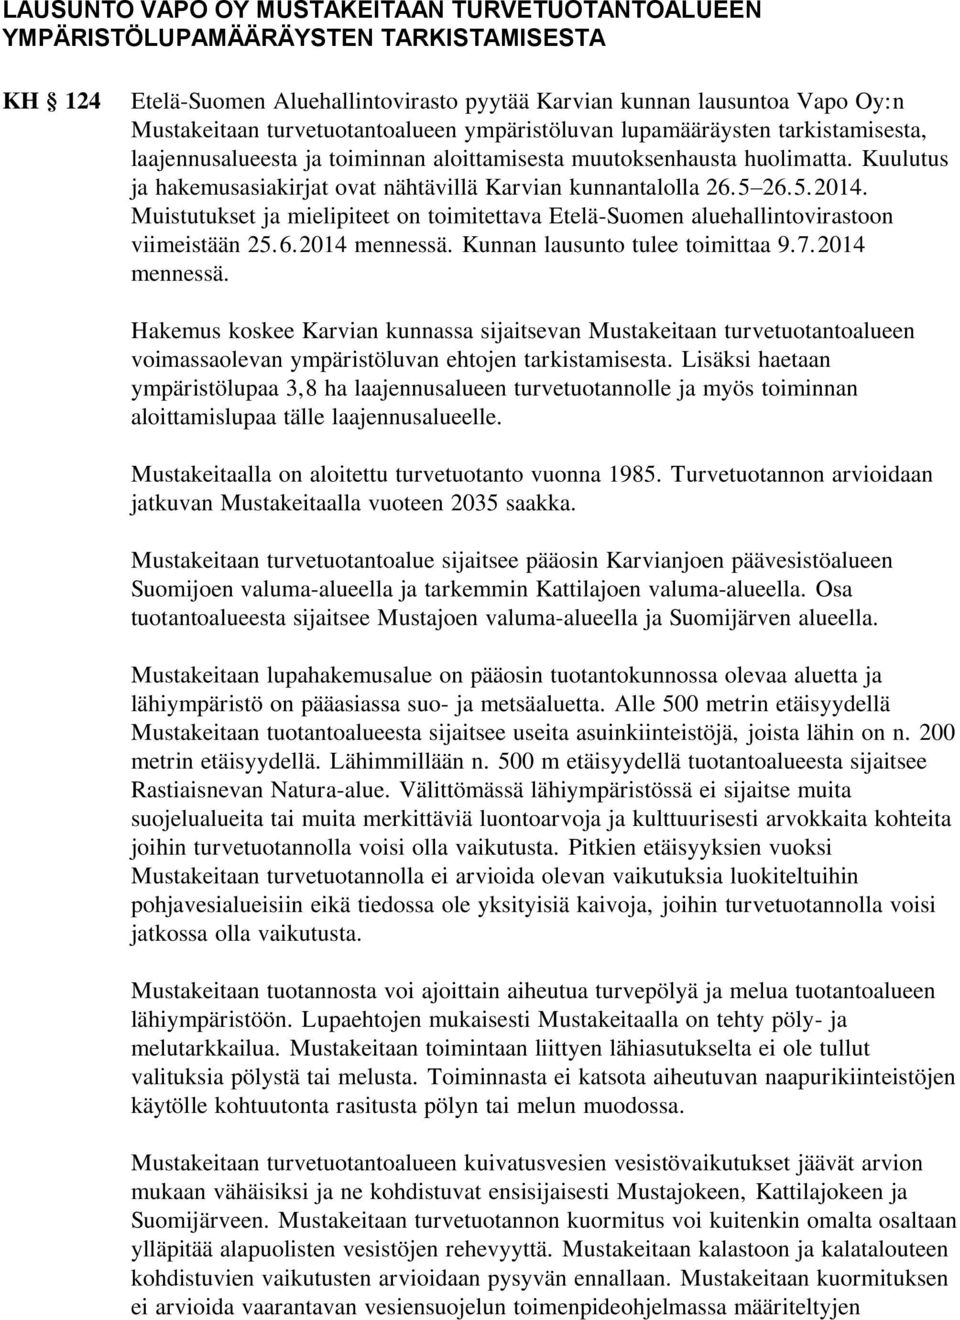 Kuulutus ja hakemusasiakirjat ovat nähtävillä Karvian kunnantalolla 26.5 26.5.2014. Muistutukset ja mielipiteet on toimitettava Etelä-Suomen aluehallintovirastoon viimeistään 25.6.2014 mennessä.